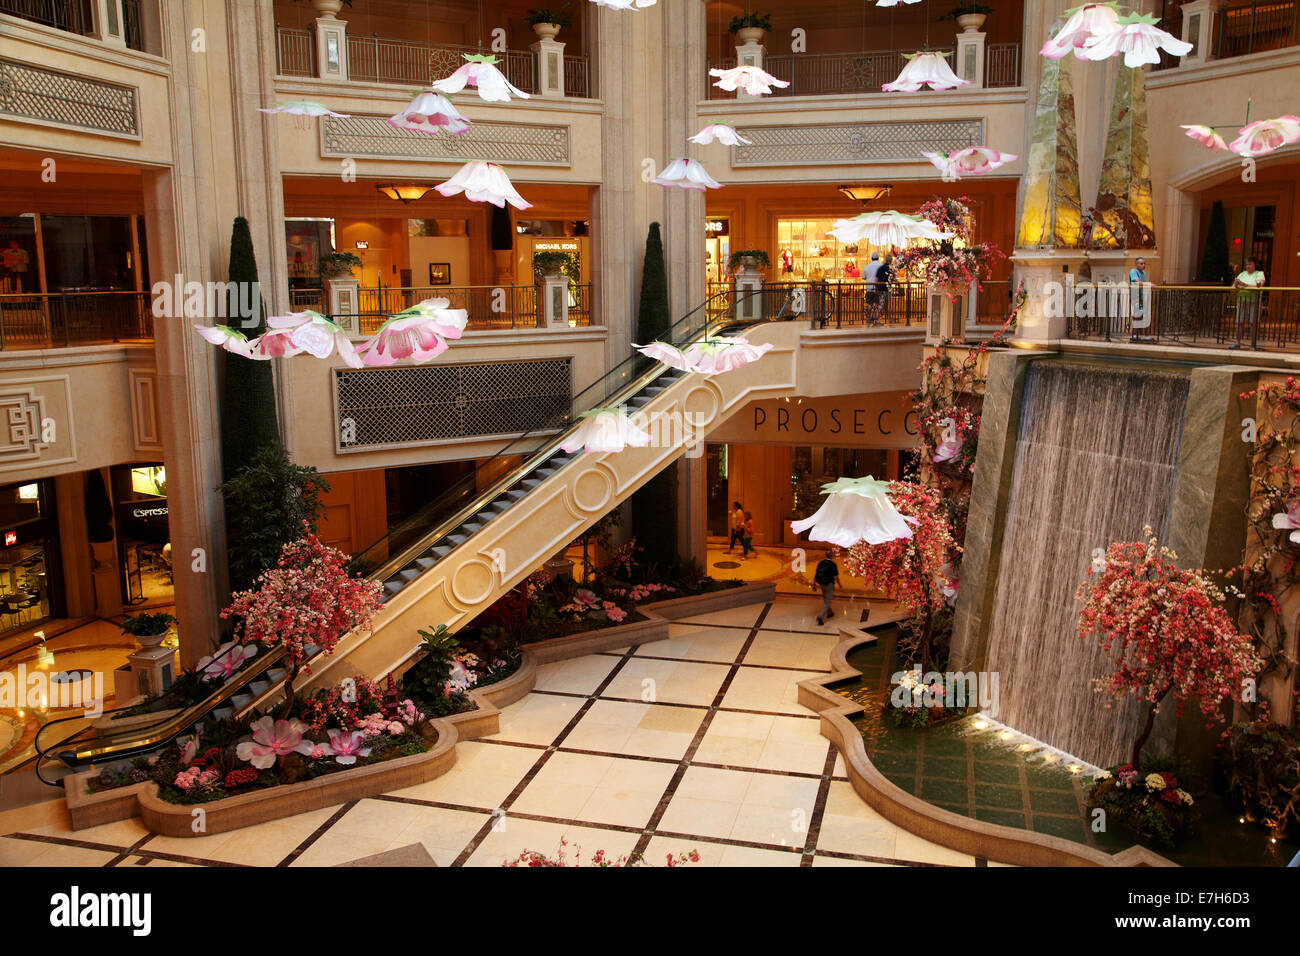 Atrium with waterfall, The Palazzo, Las Vegas, Nevada, USA Stock Photo